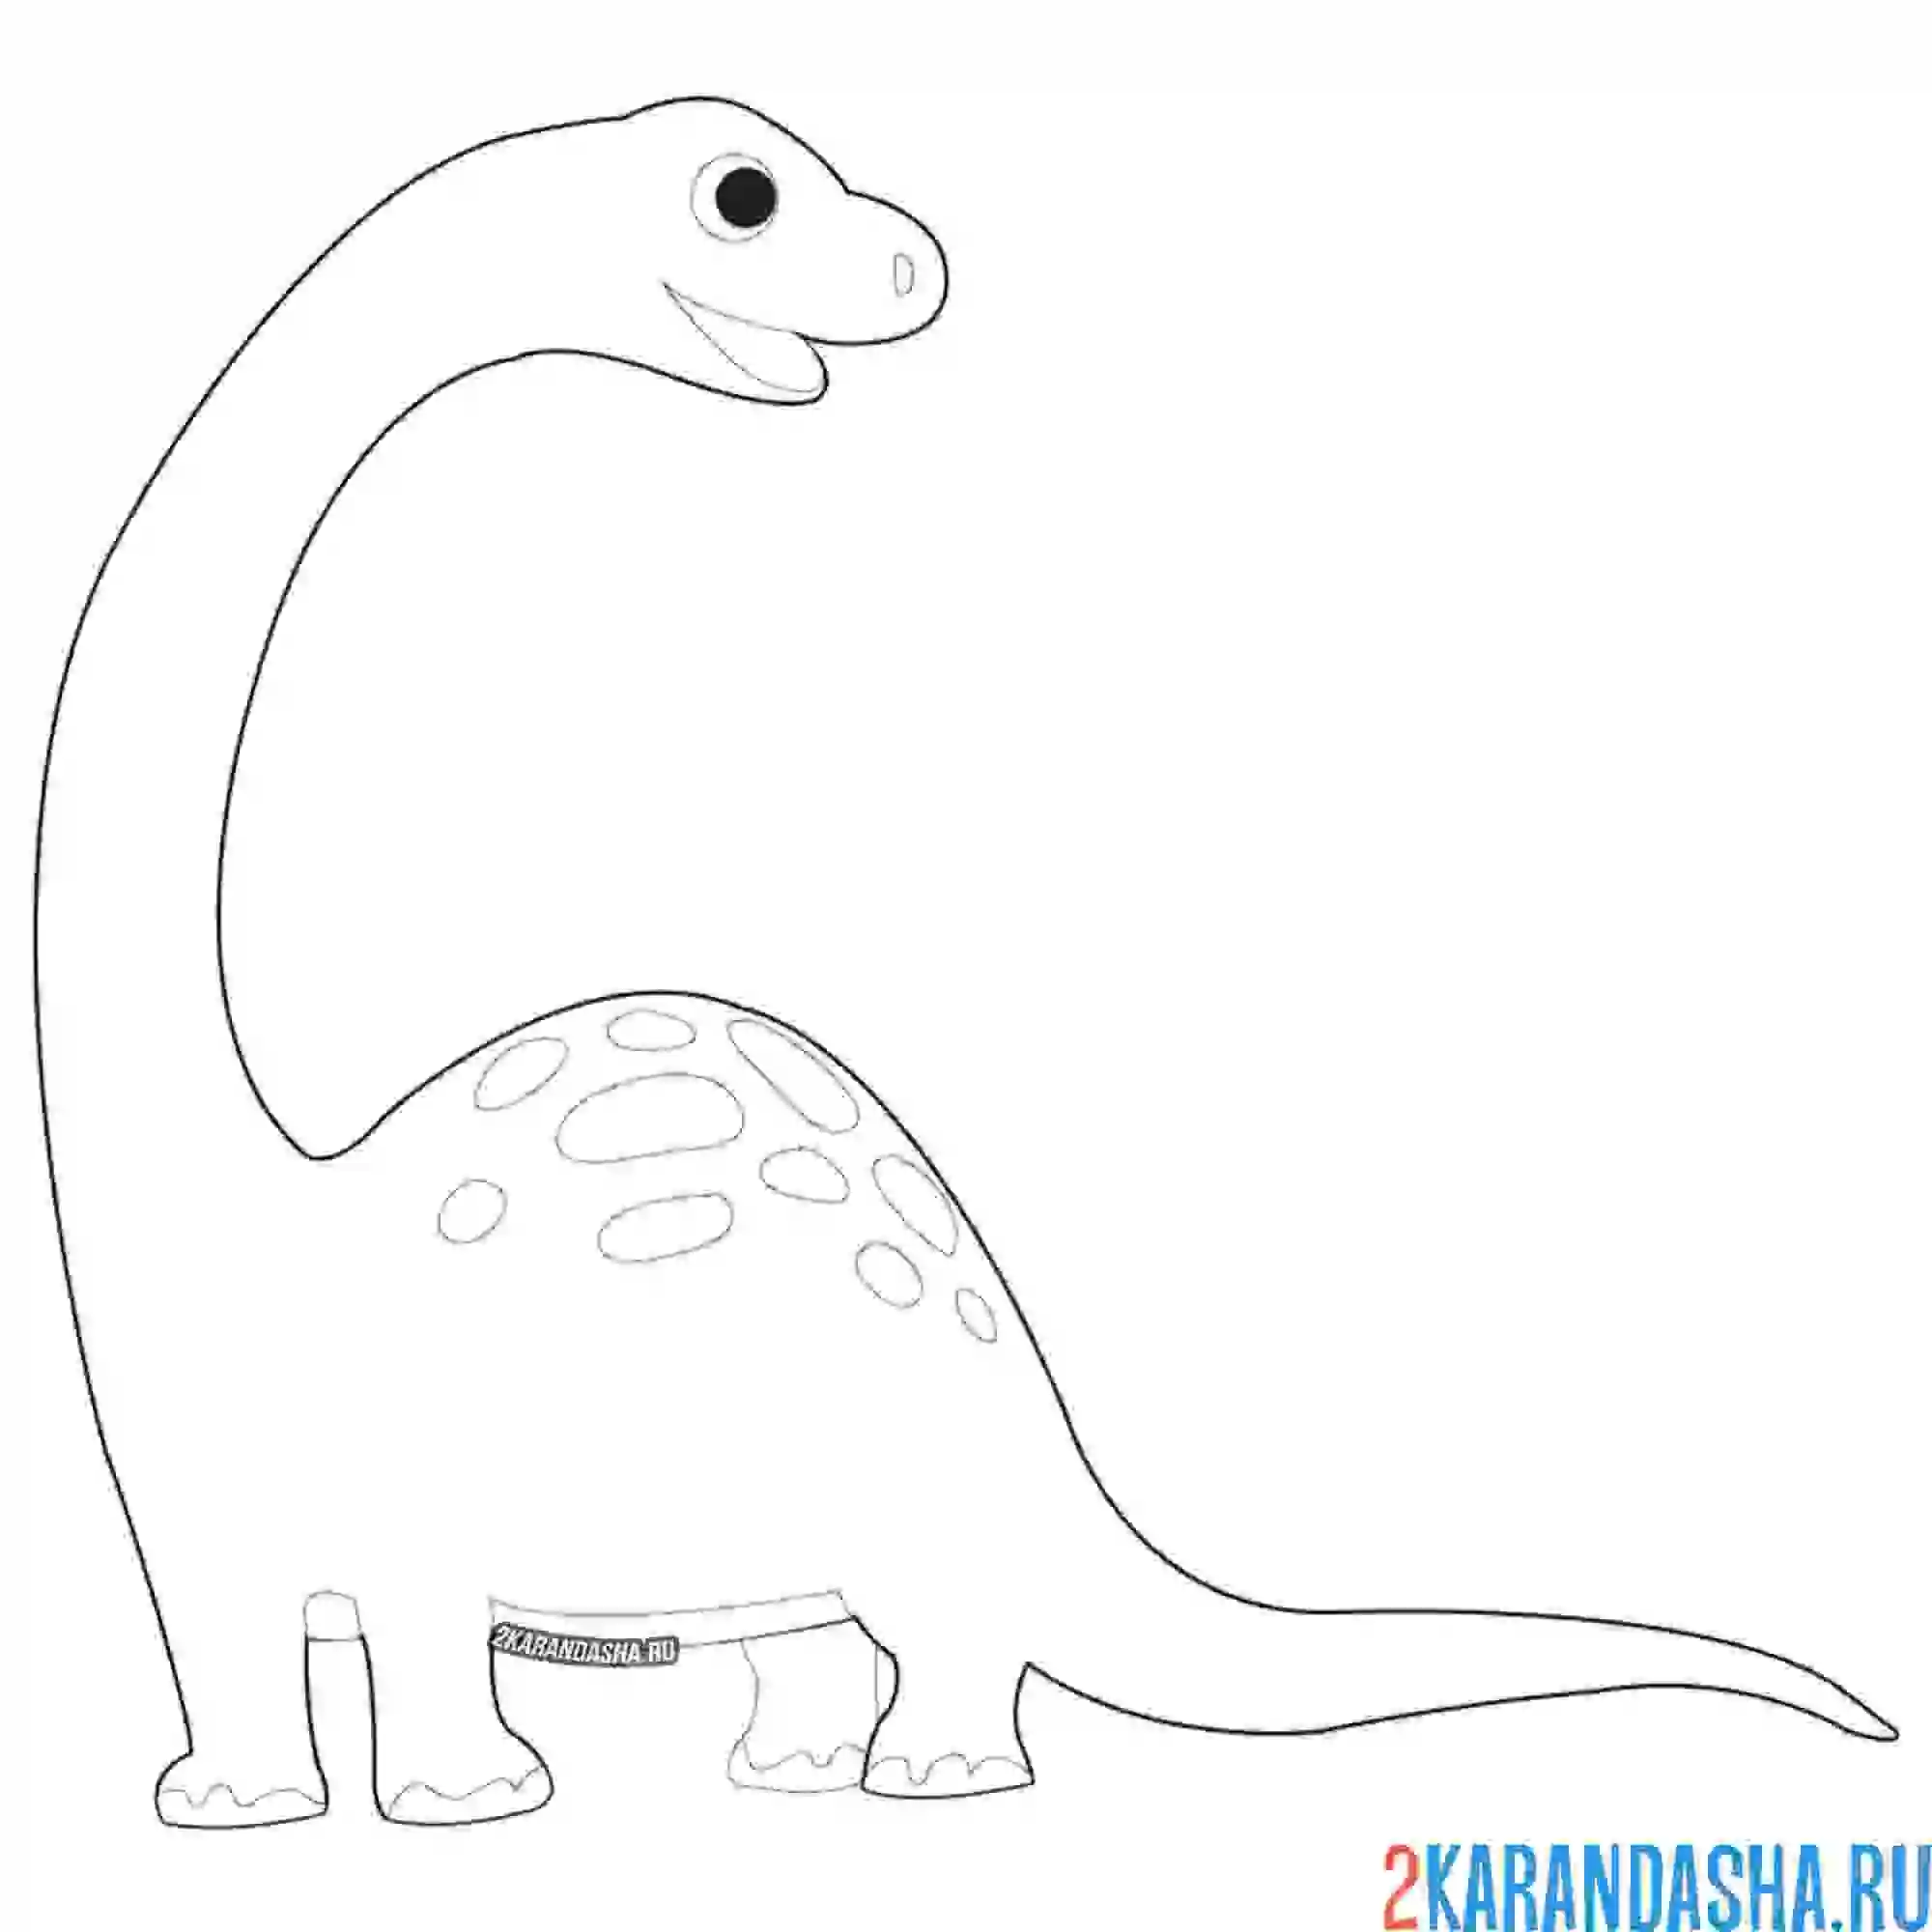 Раскраска простая картинка динозавра